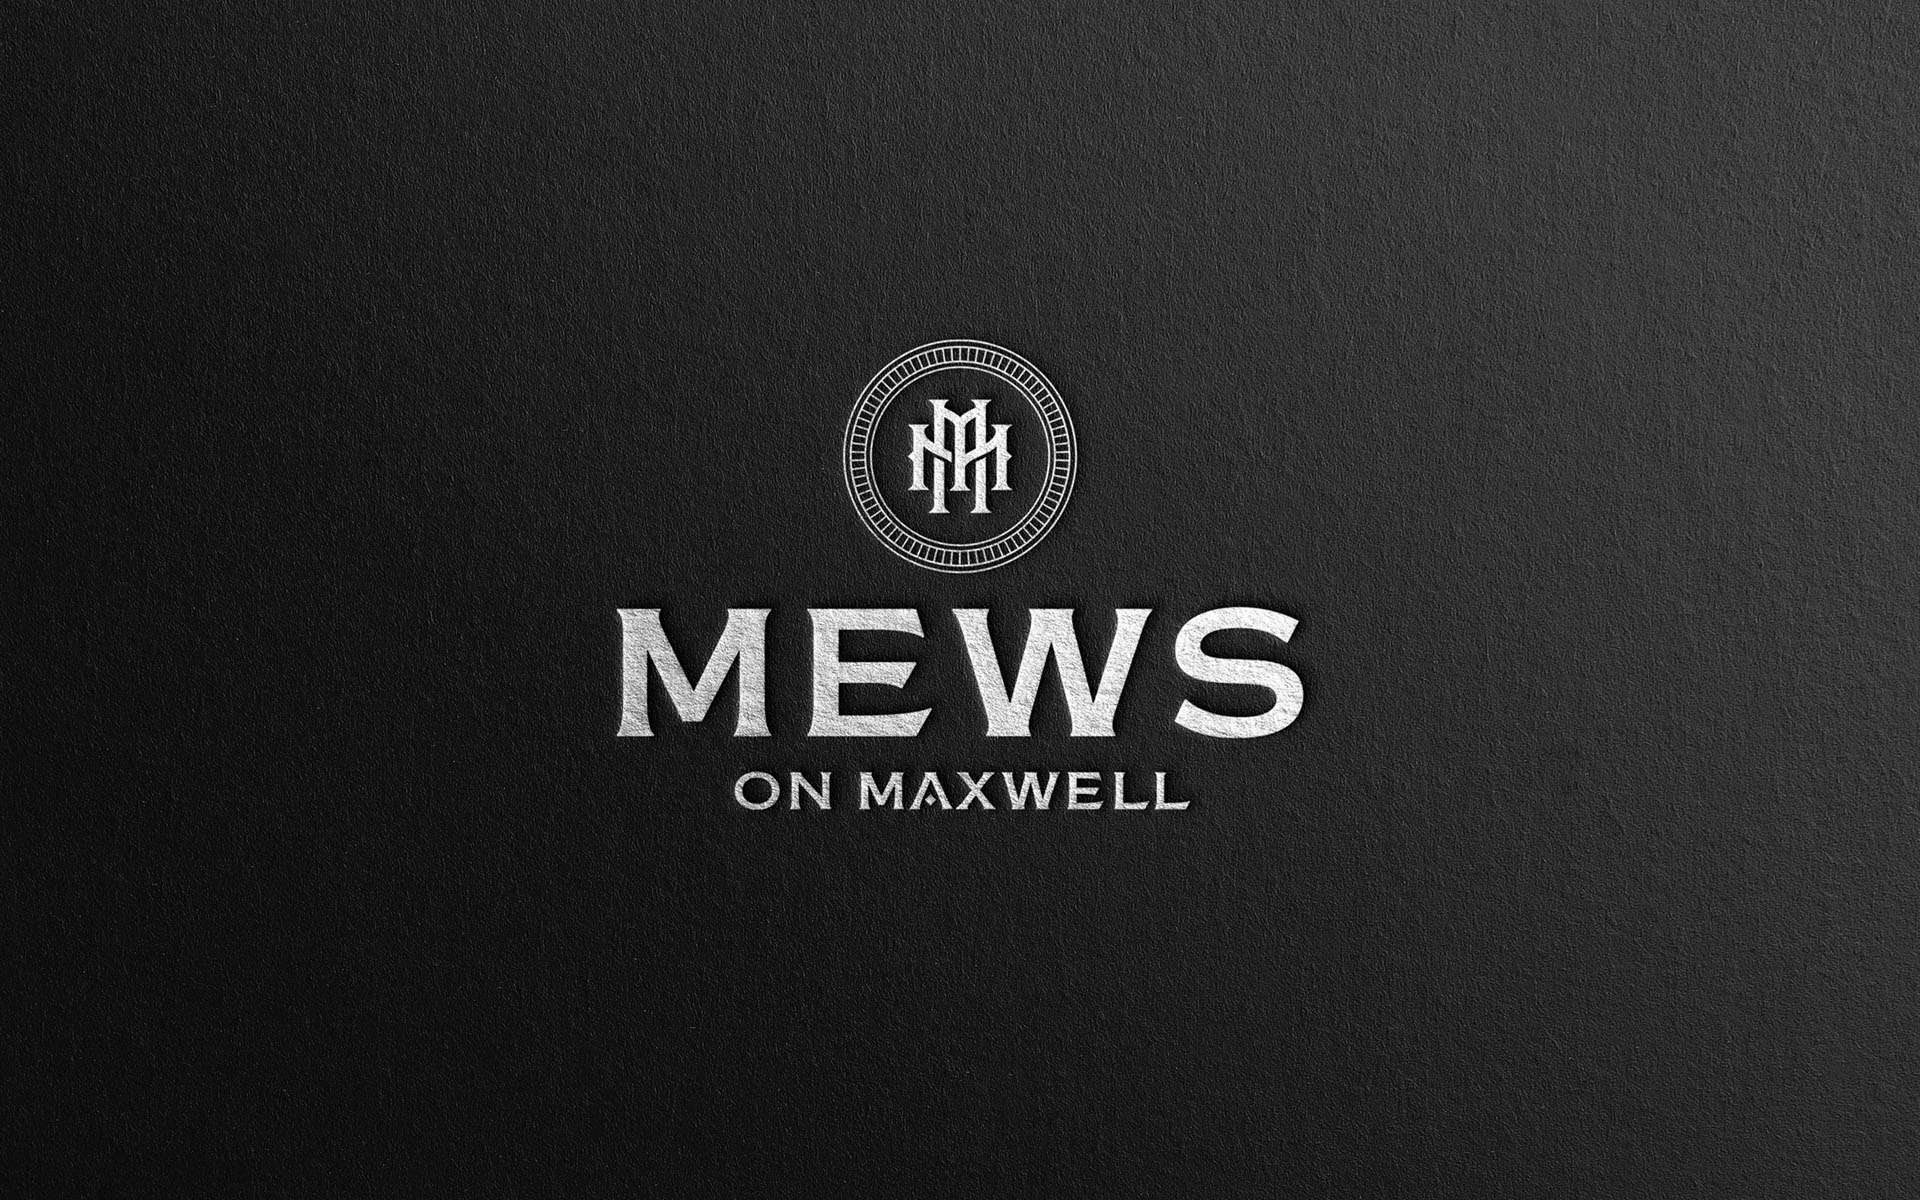 Mews 英式联排别墅房地产楼盘项目奢侈风格M双字母徽标logo设计-上海品牌设计公司